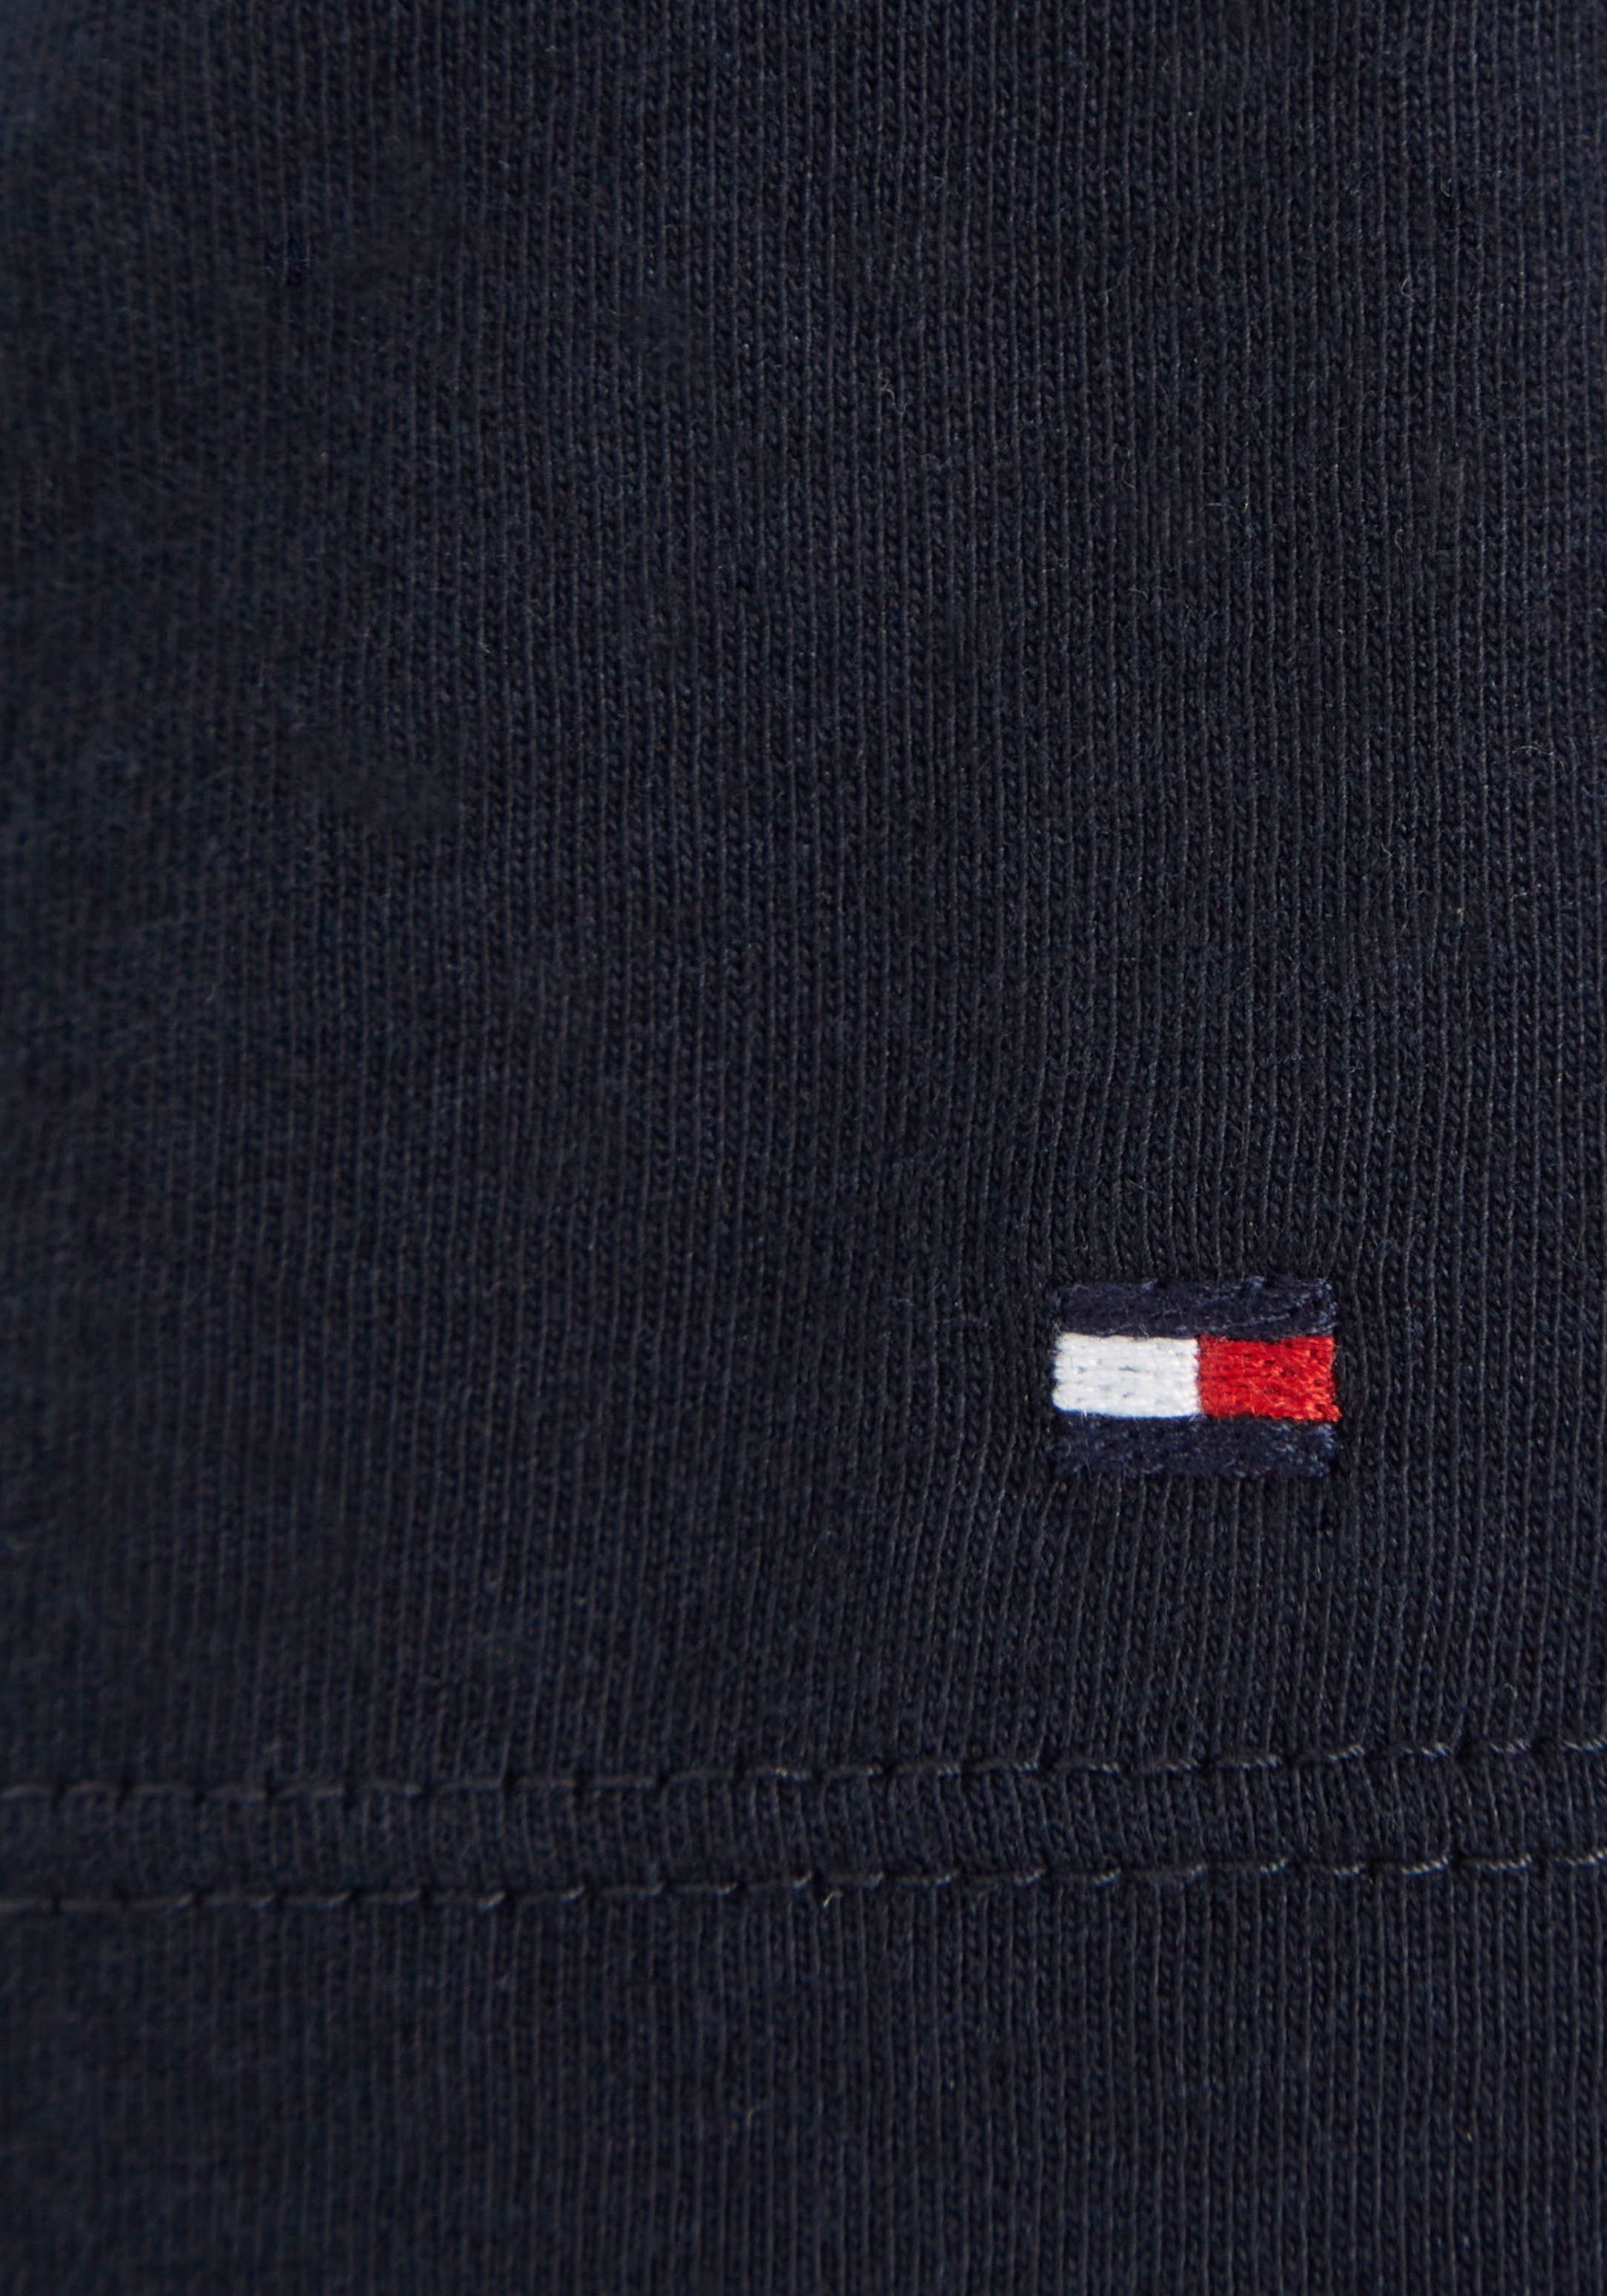 Tommy Hilfiger-Logoschriftzug MONOTYPE modischem TEE auf Brust T-Shirt der dunkelblau S/S Hilfiger mit